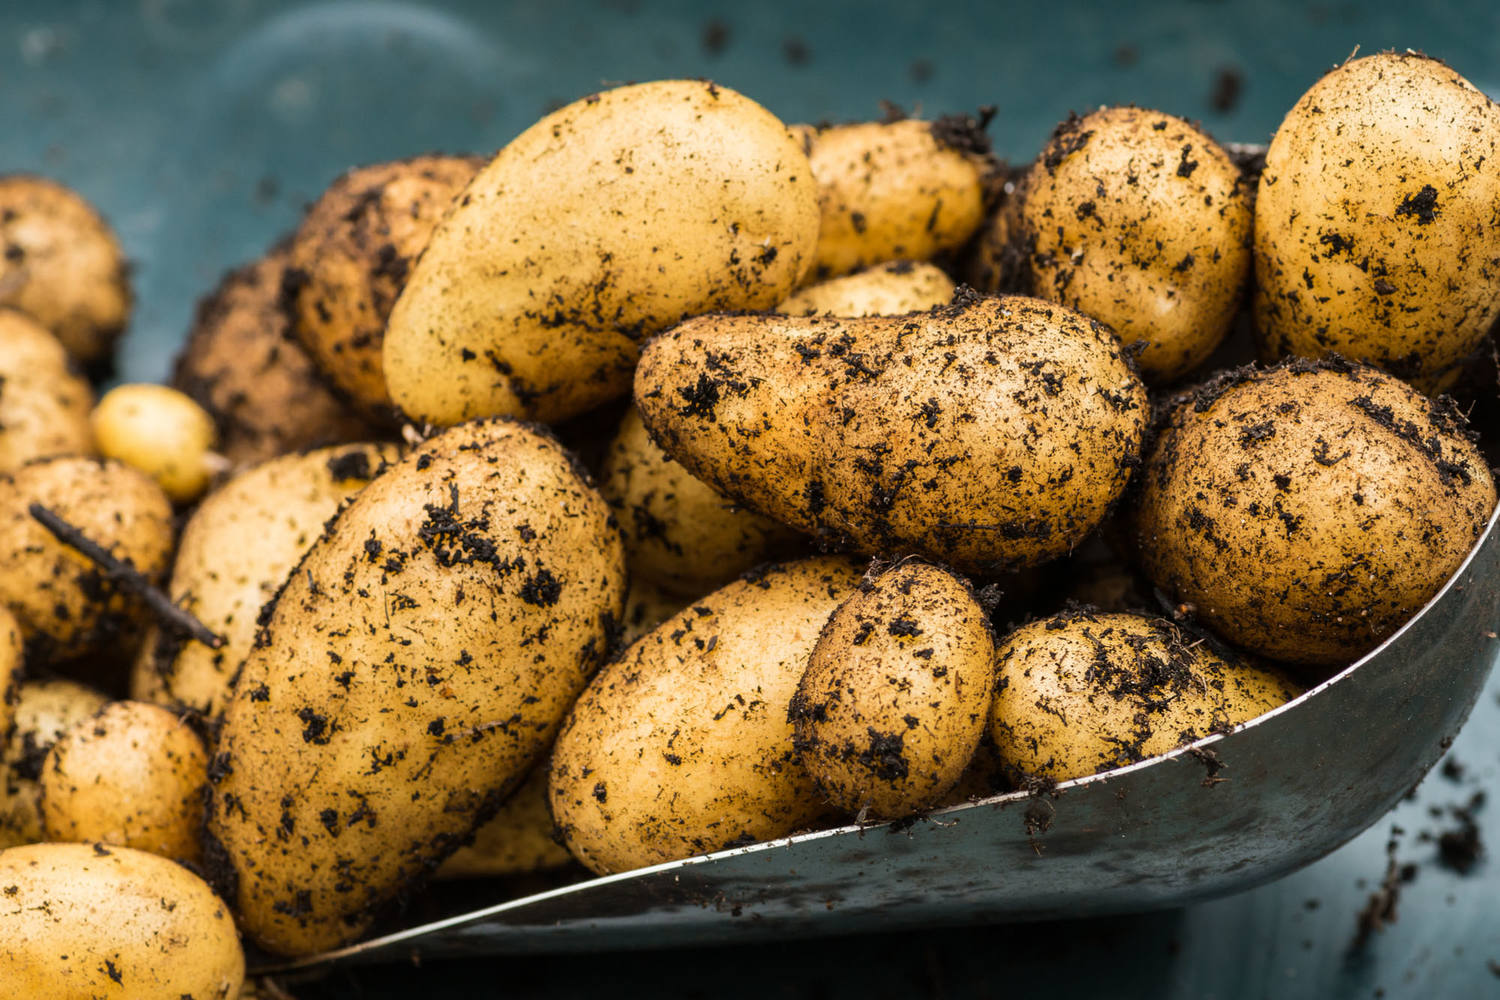 Charlotte aardappelen 1kg kist 10 stuks 2